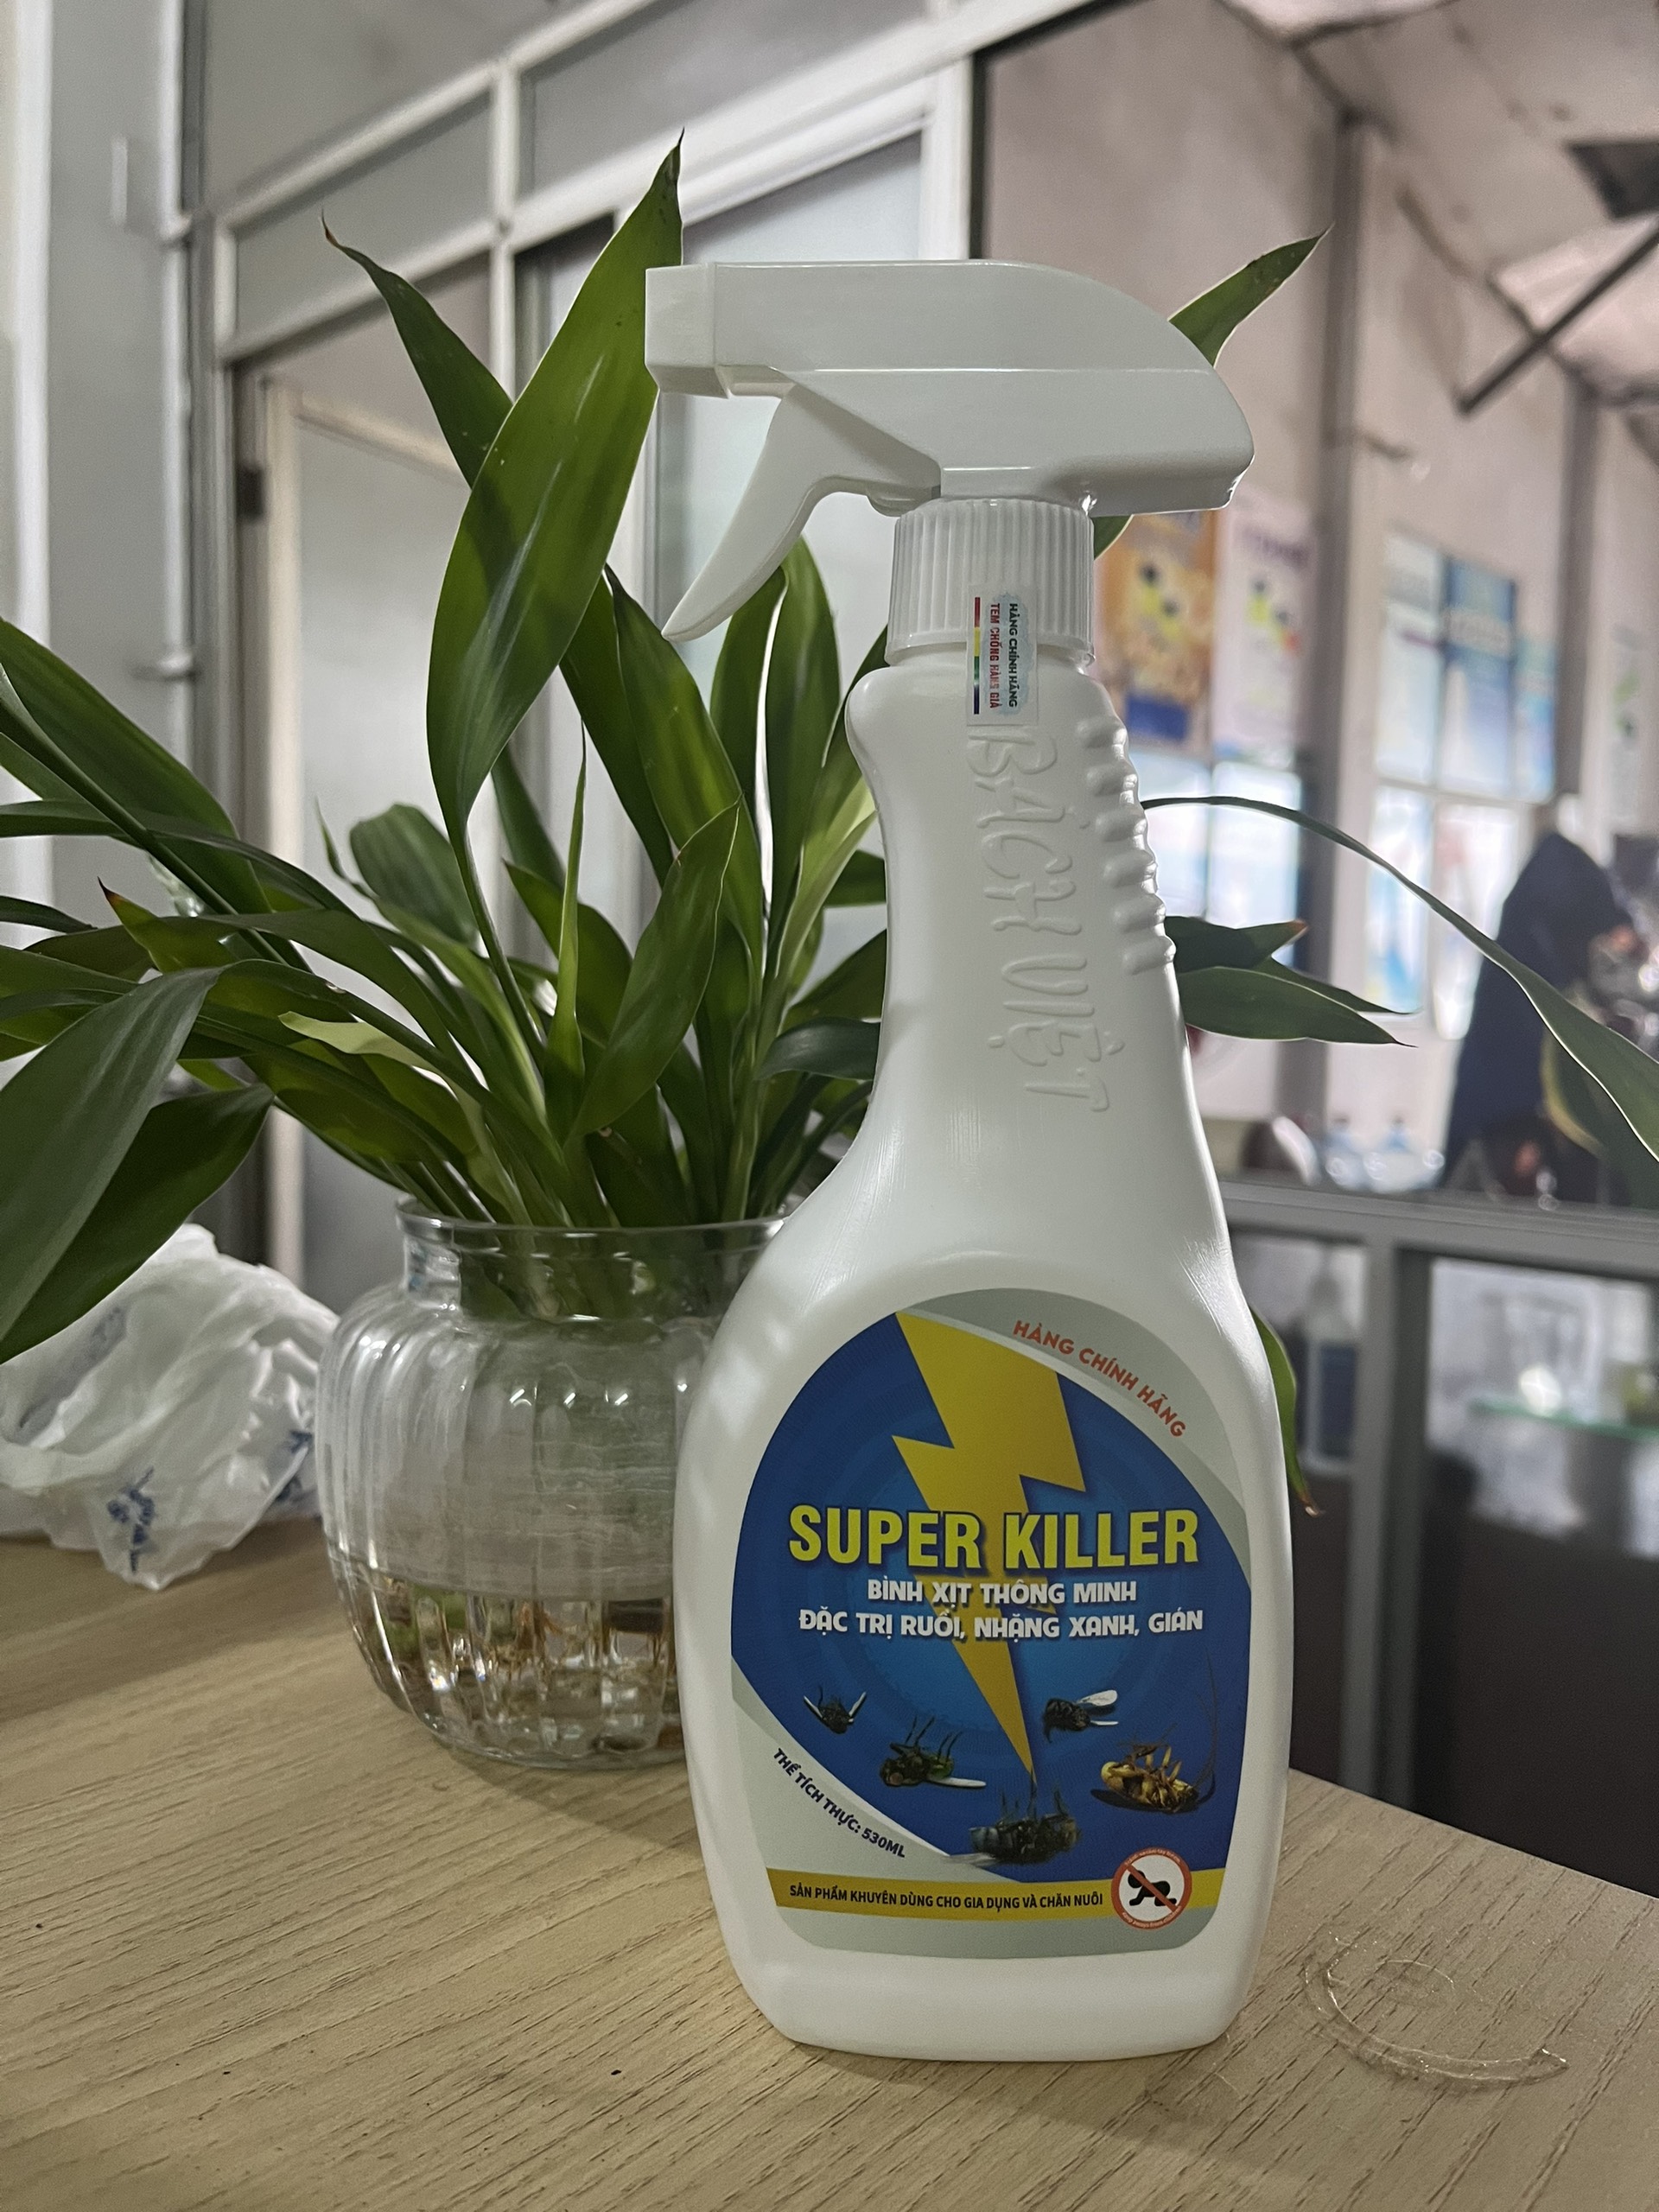 Bình xịt thông minh đặc trị ruồi, nhặng xanh, gián Super Killer 530 ml